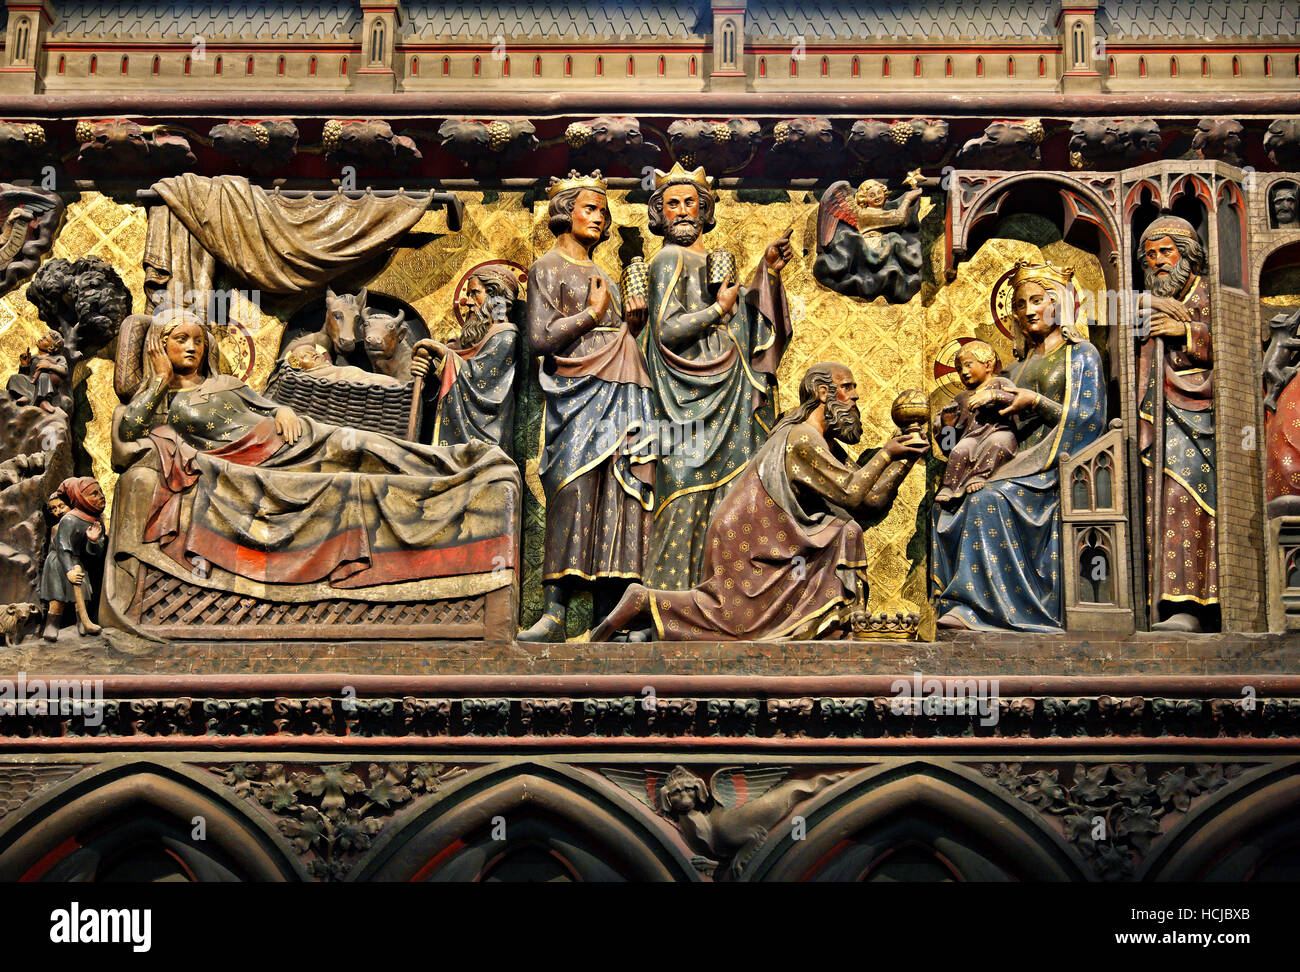 Les panneaux de bois du 14ème siècle représentant des scènes de la vie de Jésus Christ à l'intérieur de la Cathédrale Notre Dame, Paris, France. Banque D'Images